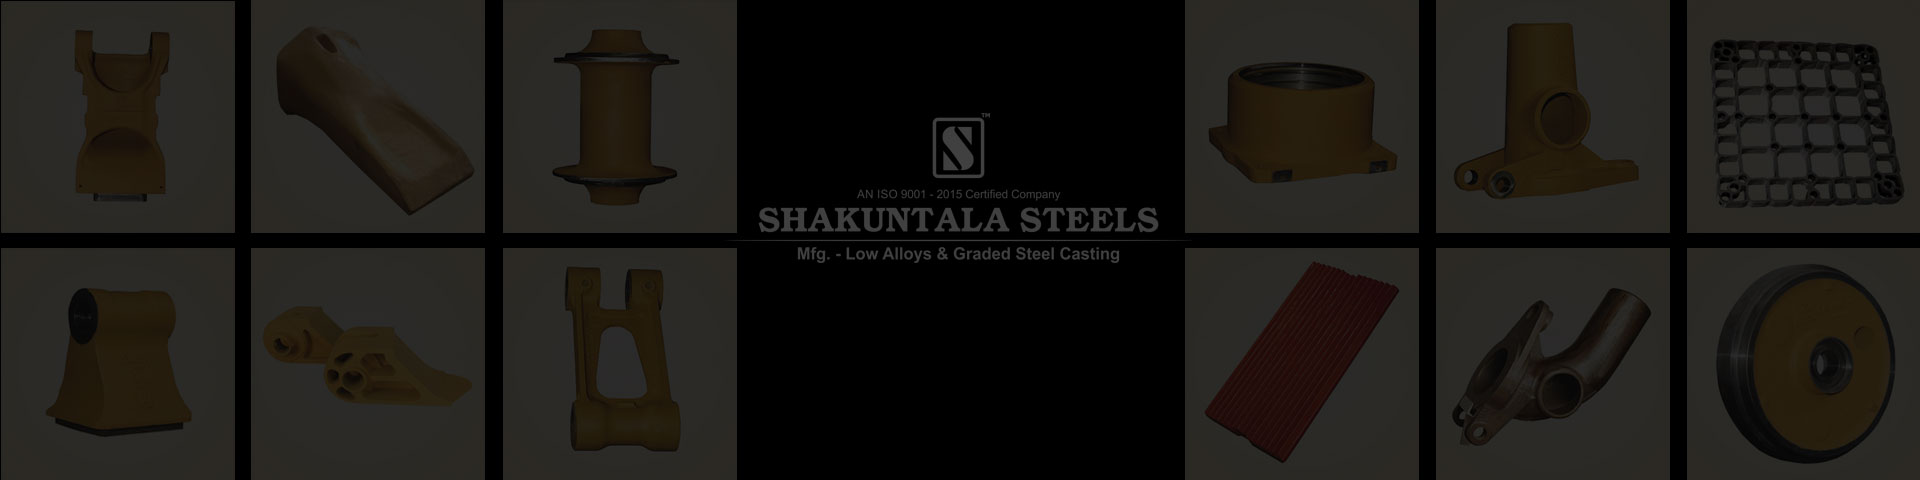 Products - Shakuntala Steels Castings 